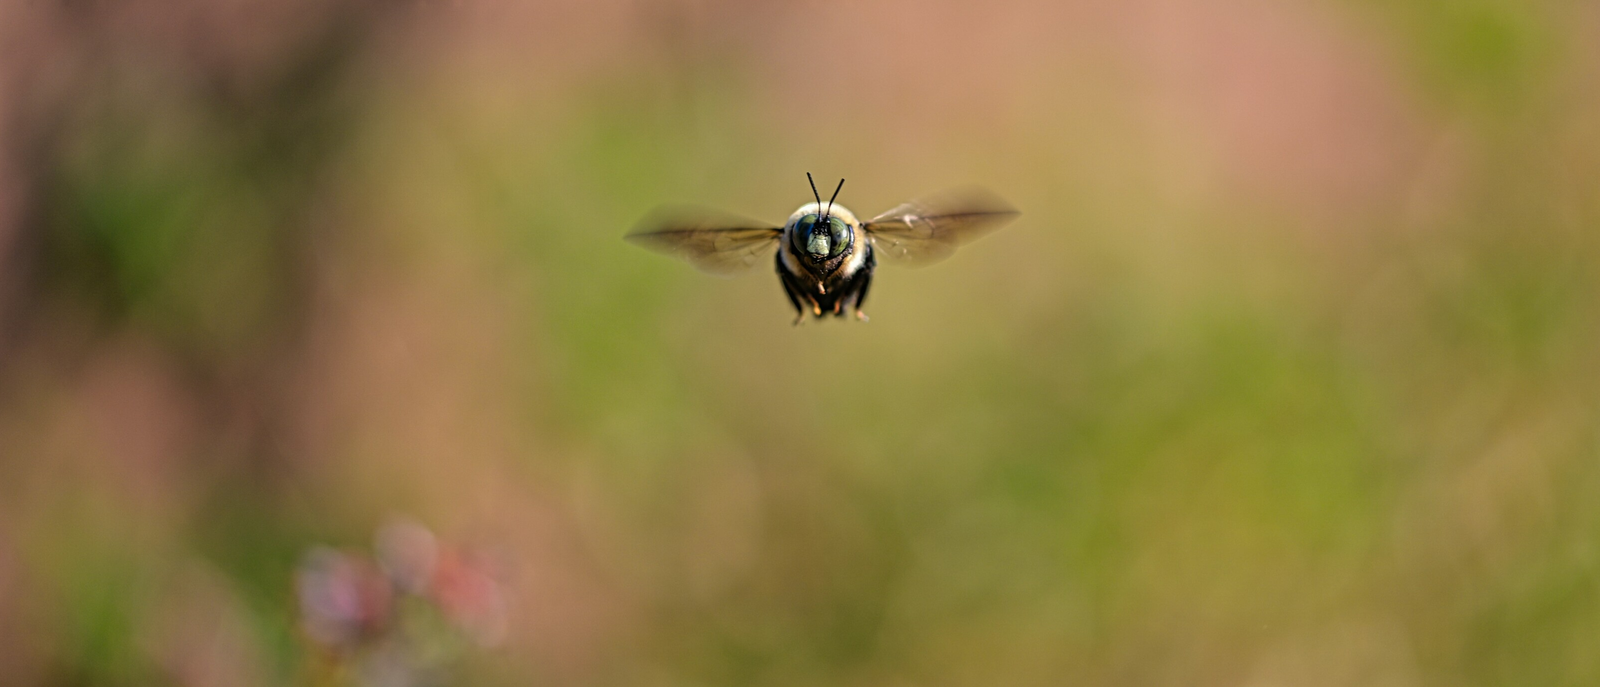 Roboter-Bienen: Kann Technik die Arbeit von Insekten ersetzen?